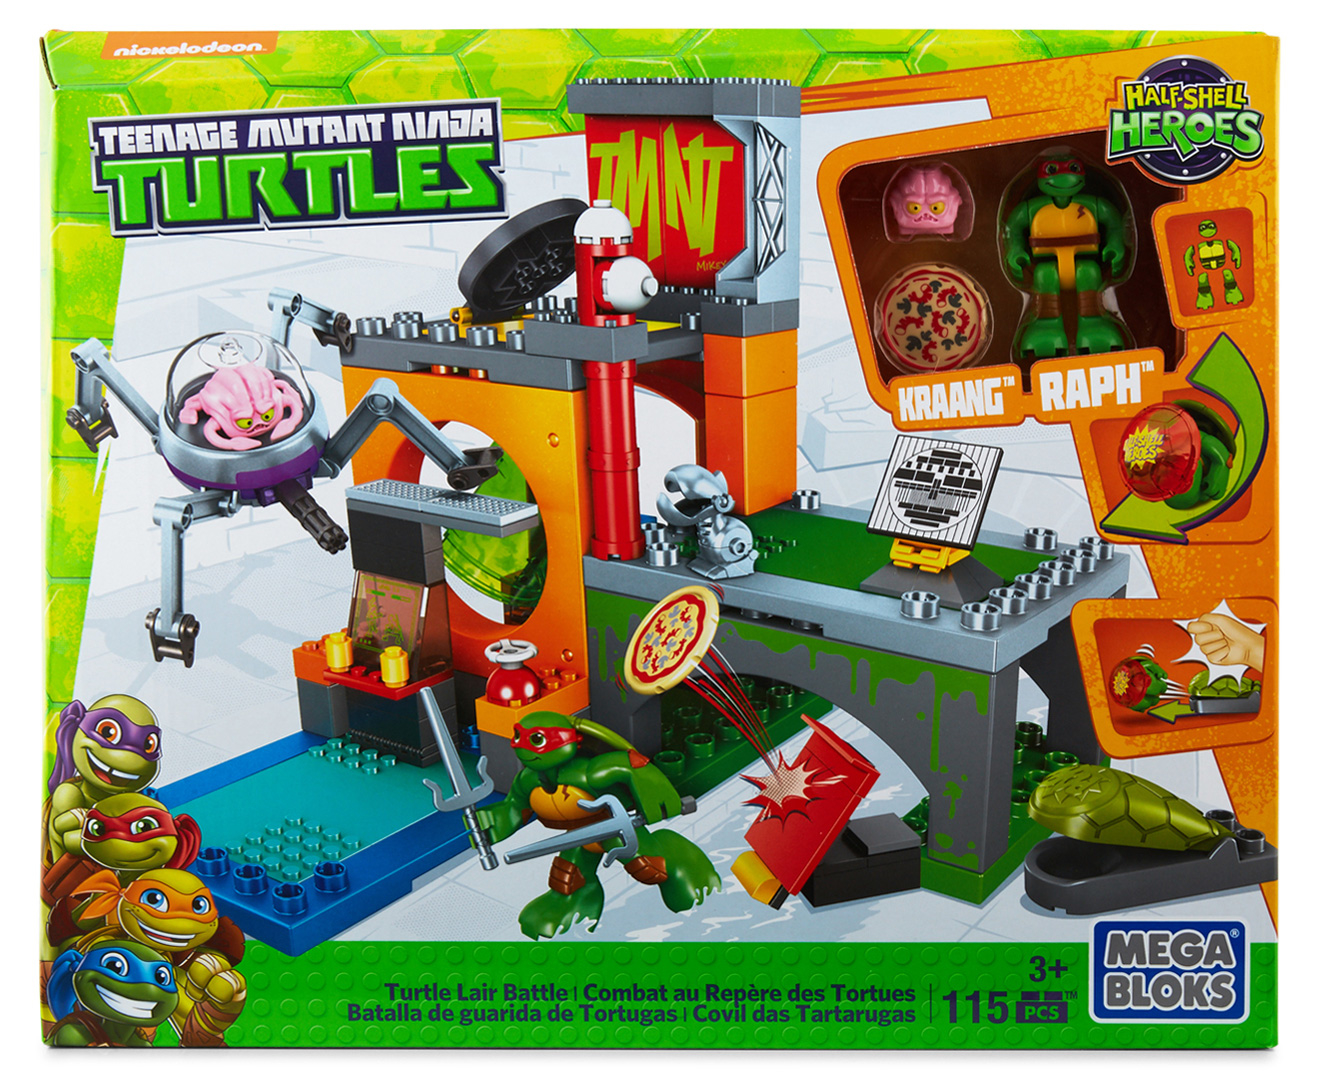 TMNT Mega Bloks Turtle Lair Battle Playset | Mumgo.com.au